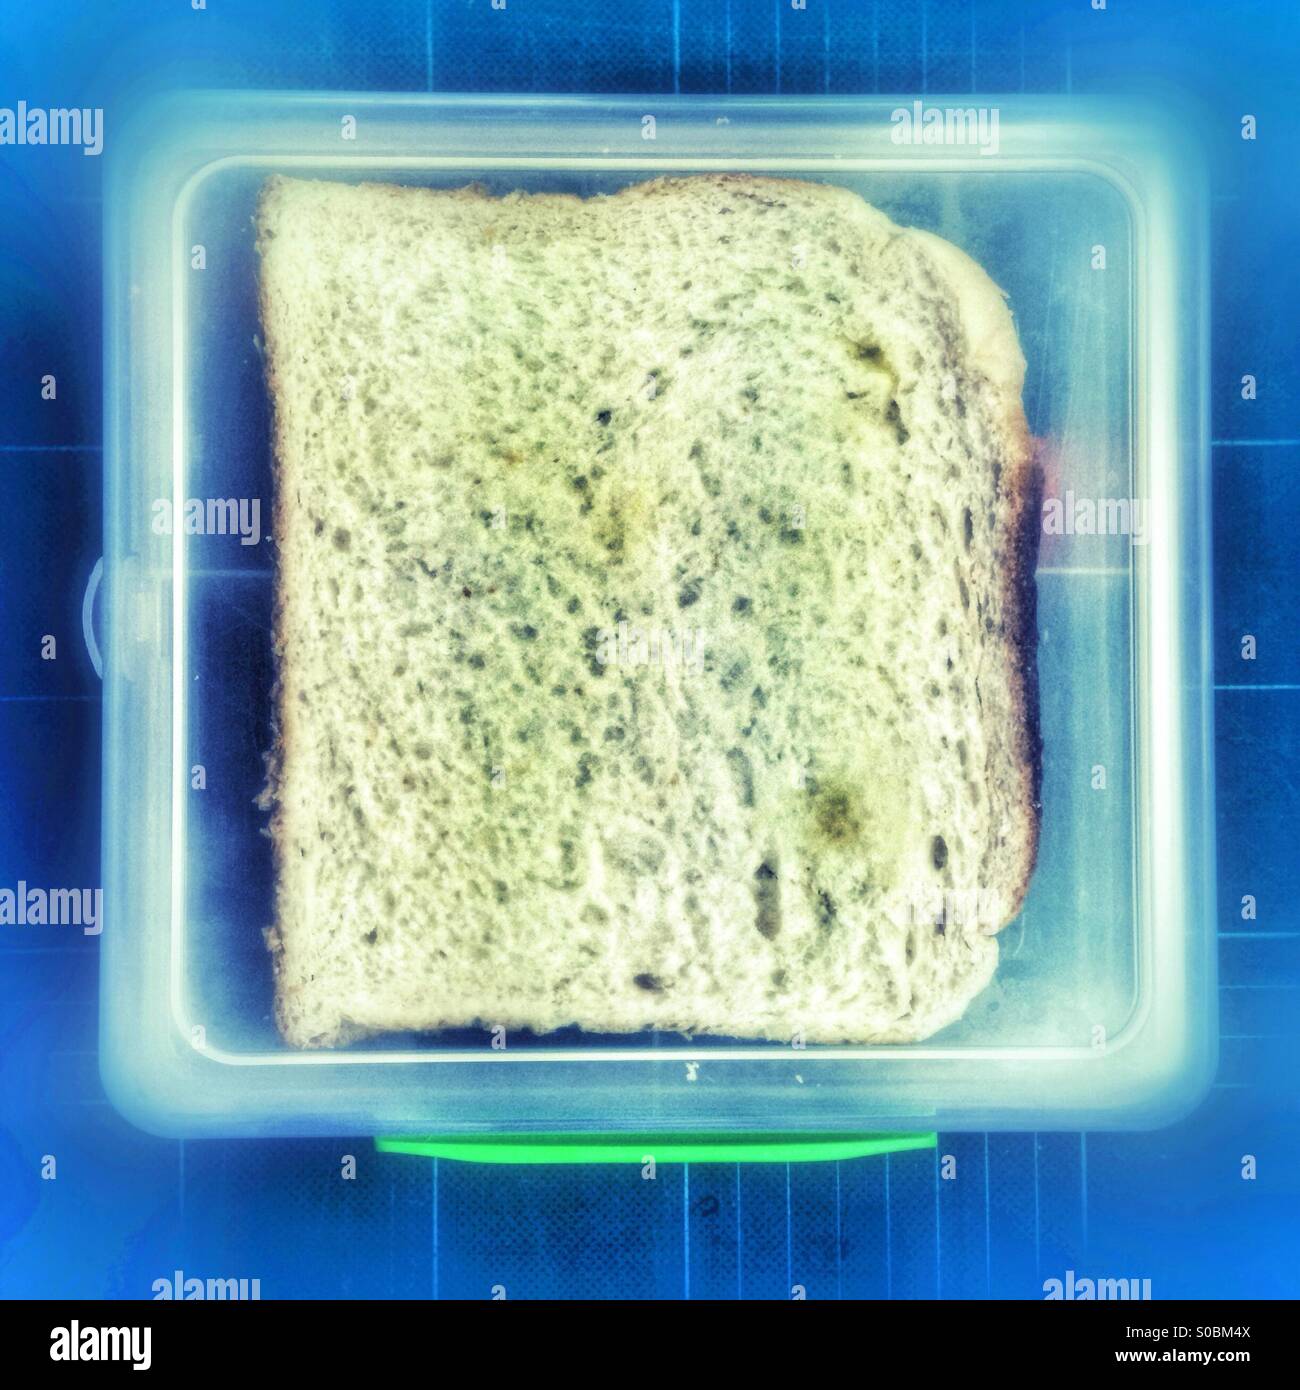 White bread sandwich in a plastic lunch box. Stock Photo